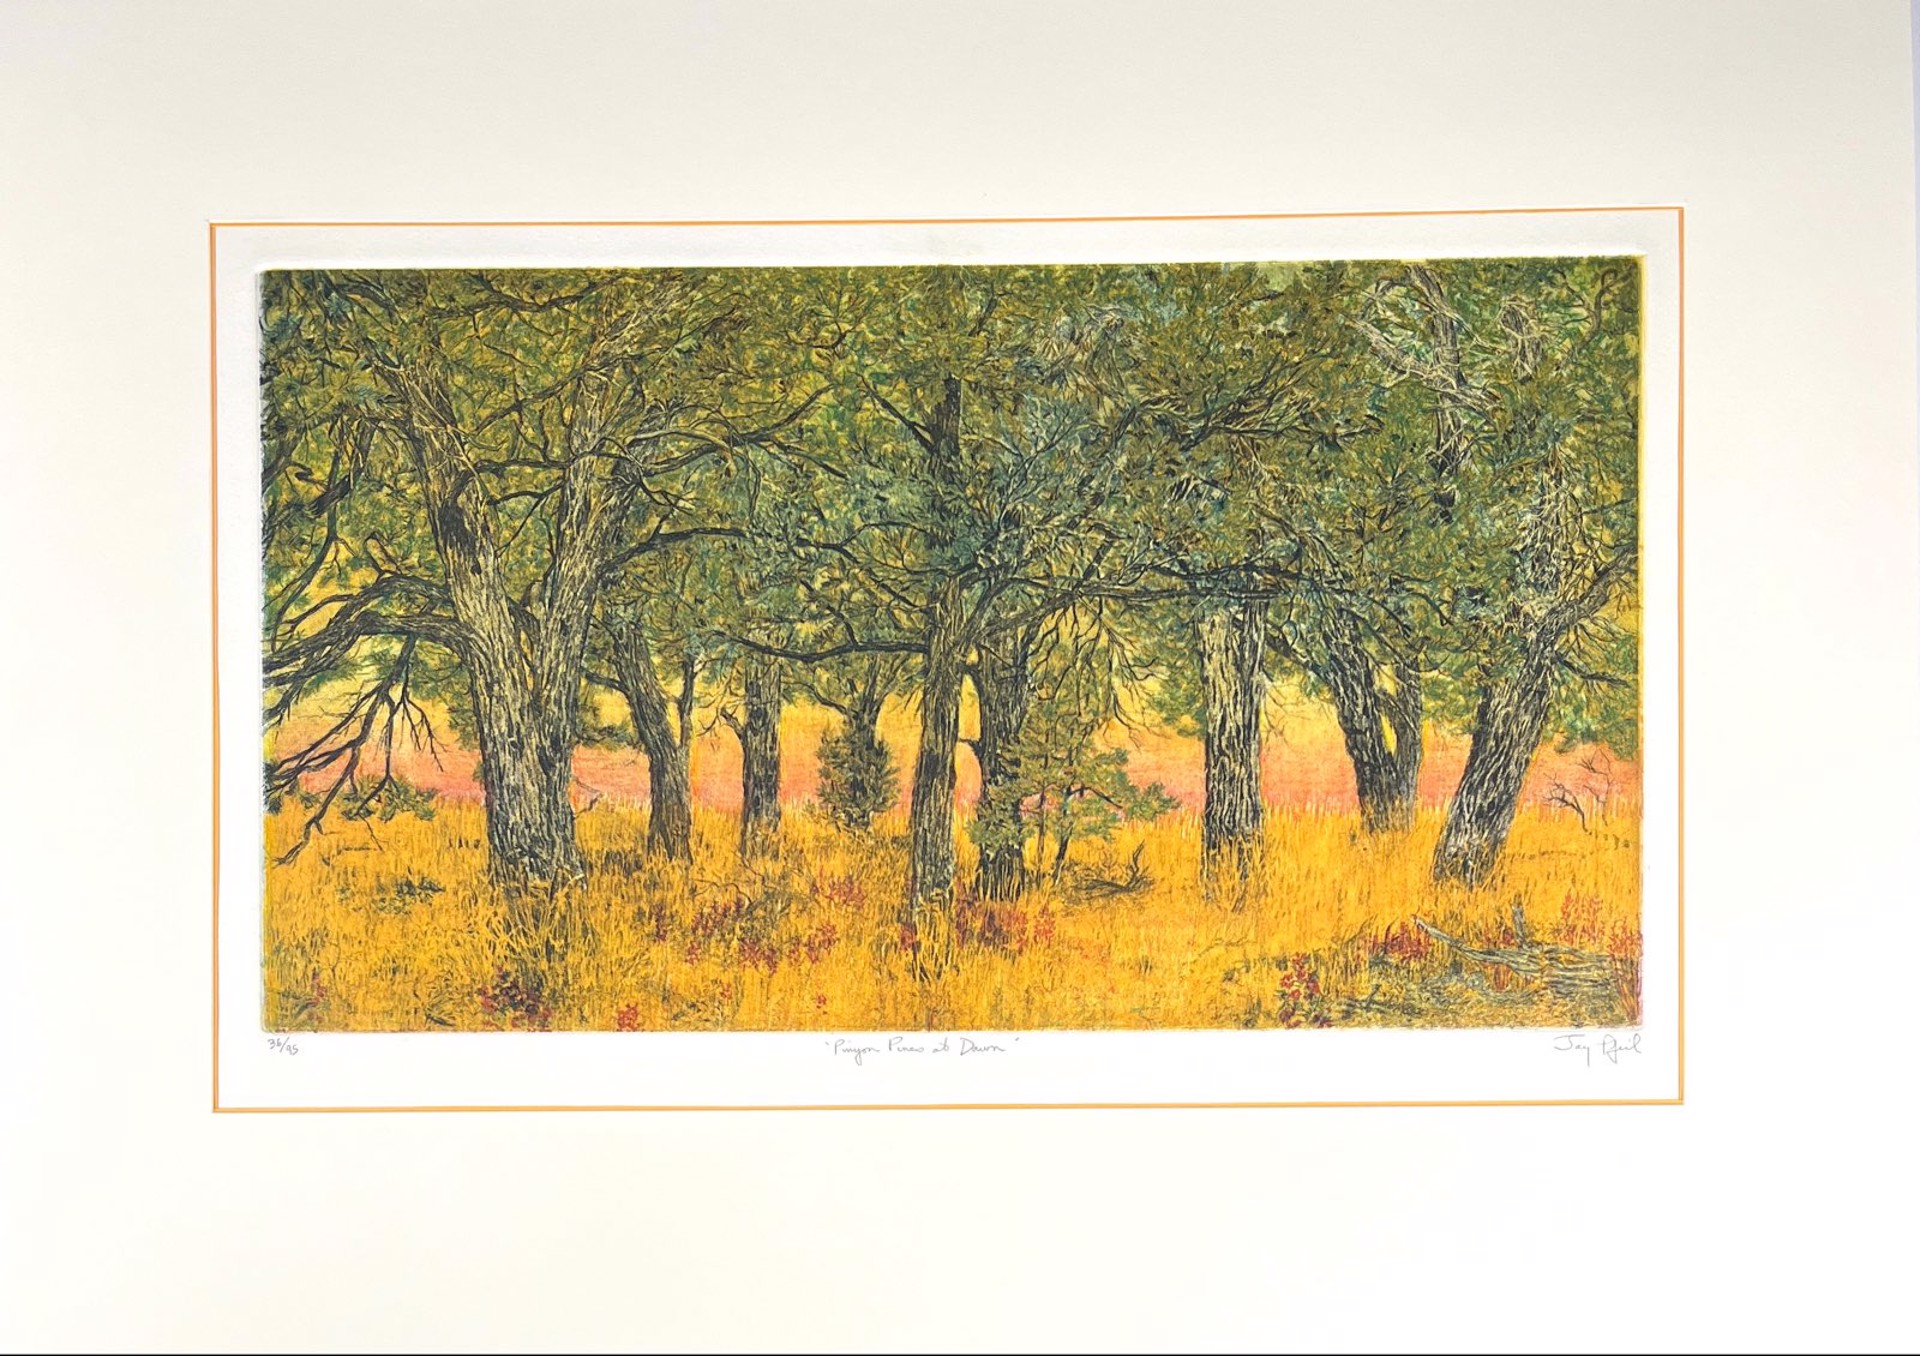 Pinyon Pines at Dawn (36/95) by Jay Pfeil